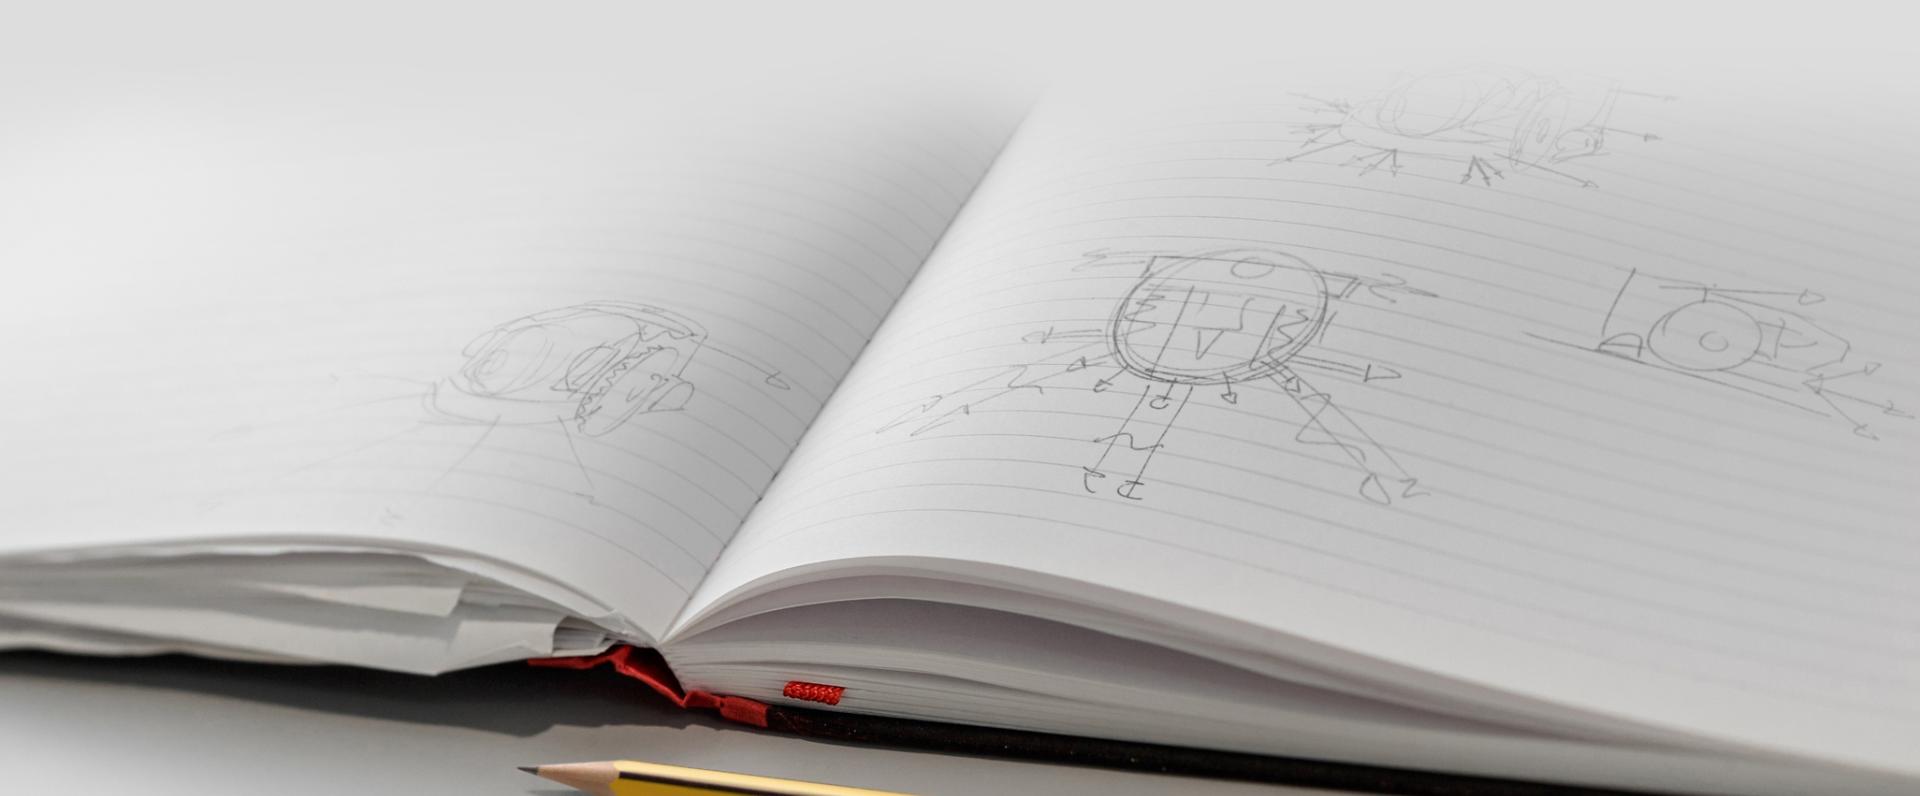 Engineer's sketchbook	